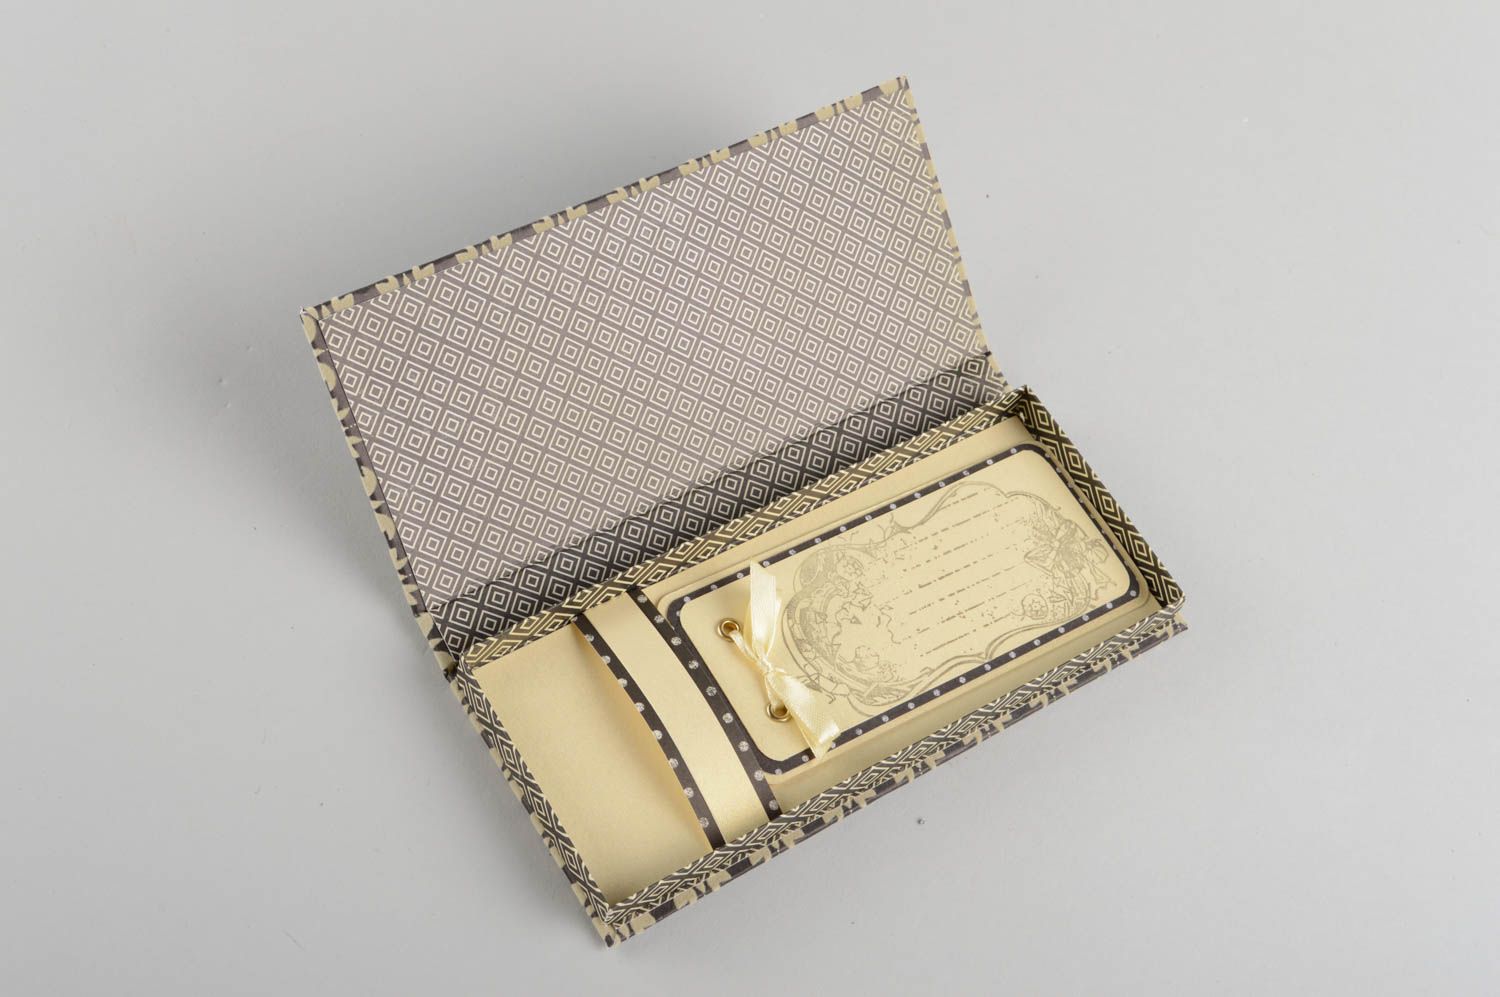 Оригинальная подарочная коробка для денег ручной работы в технике скрапбукинг фото 3